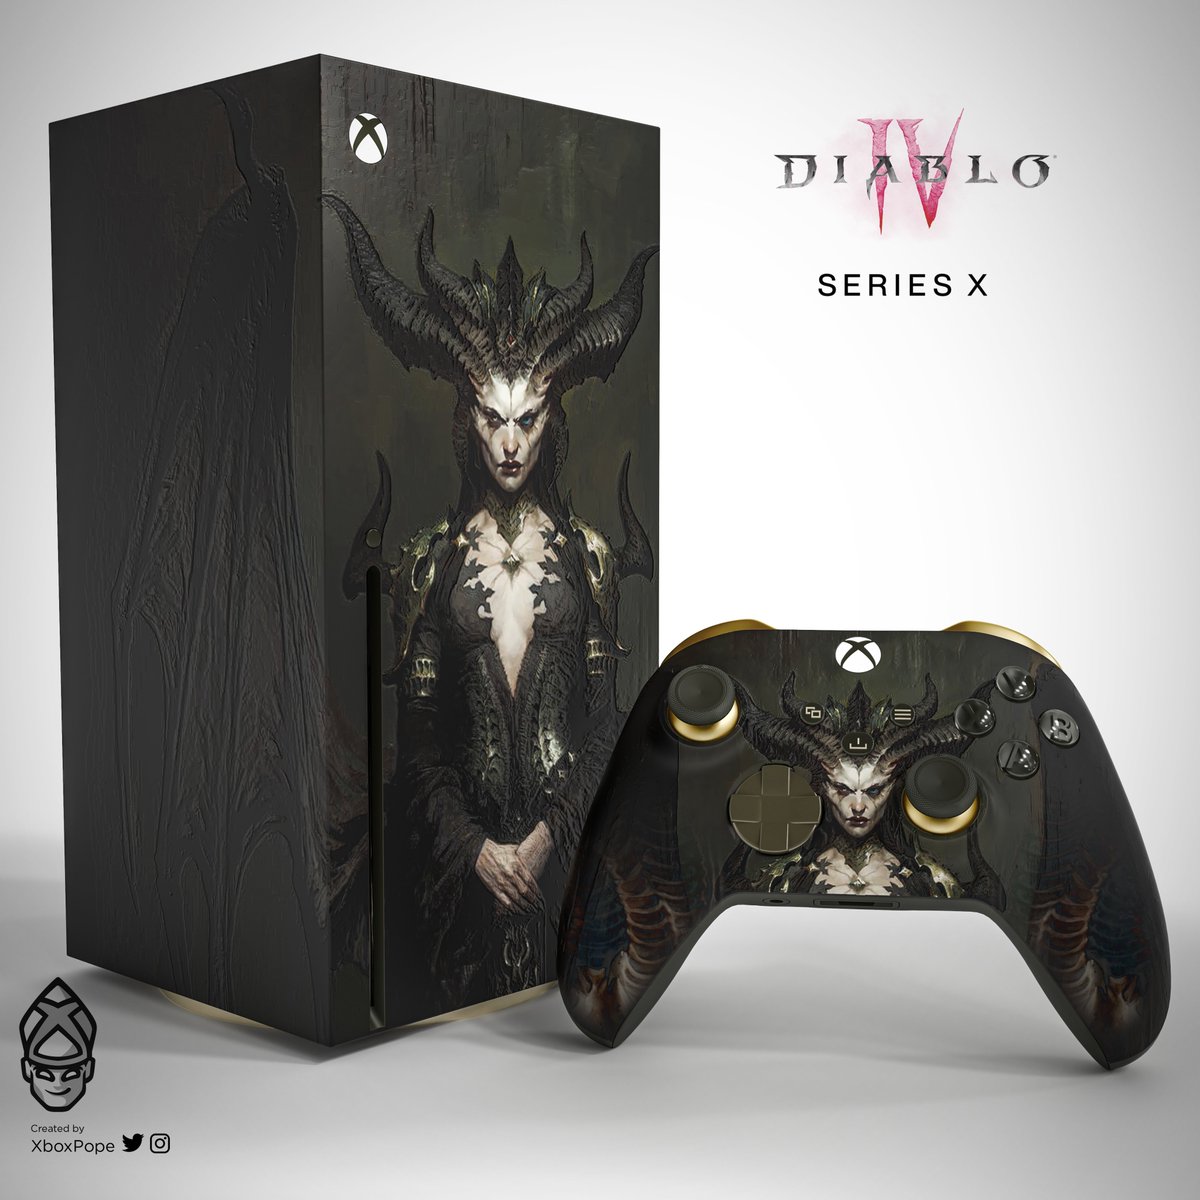 Diablo xbox купить. Xbox Series x/s. Diablo 4 Xbox. Xbox Series x Diablo 4. Xbox 360 Series x.